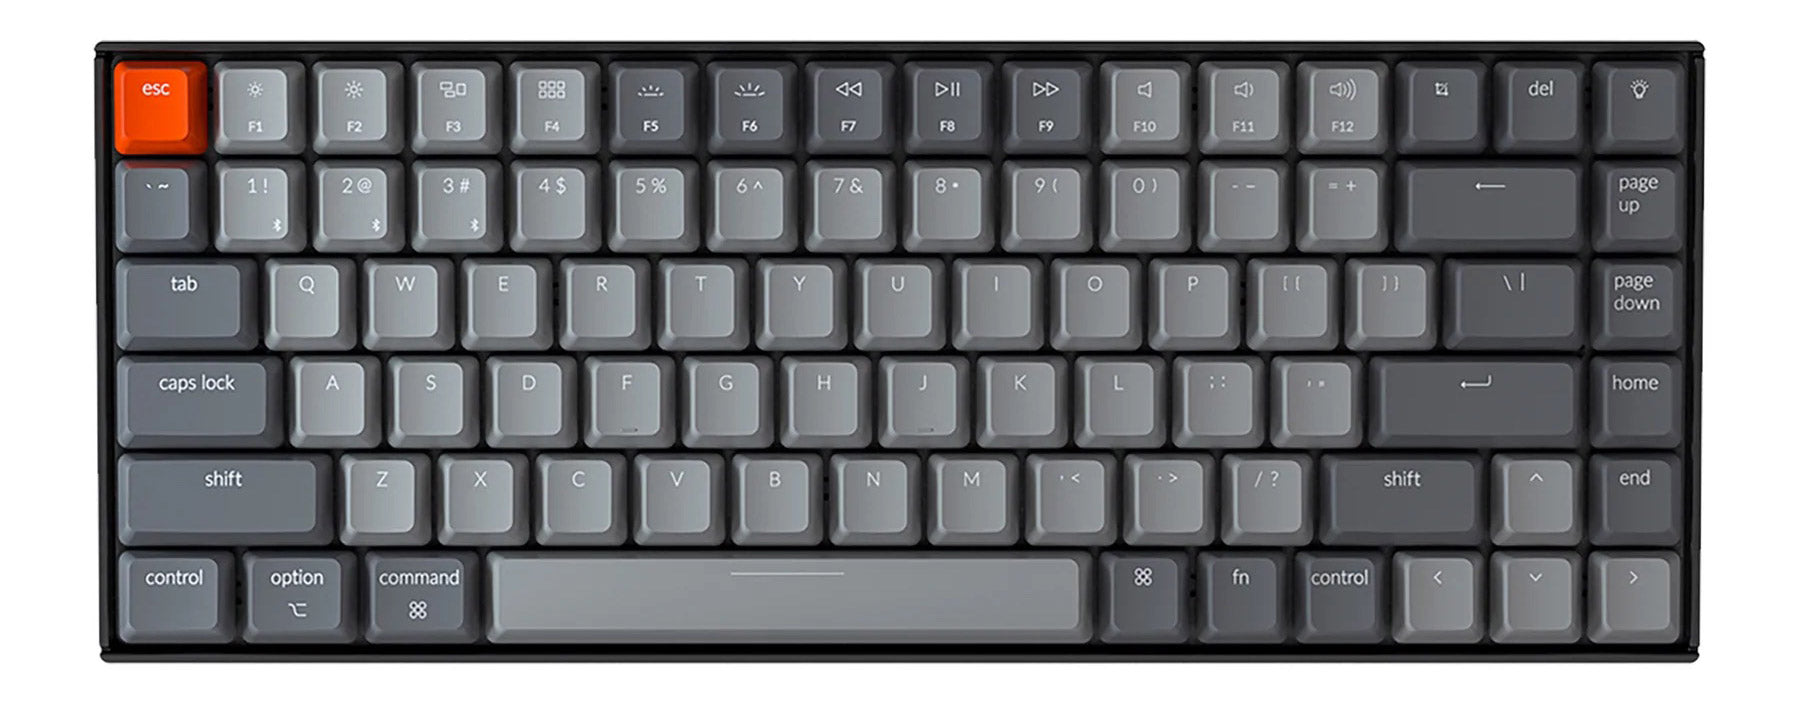 Keychron K2 wireless mechanical keyboard for Mac Windows iOS Gateron switch with type-C RGB white backlight